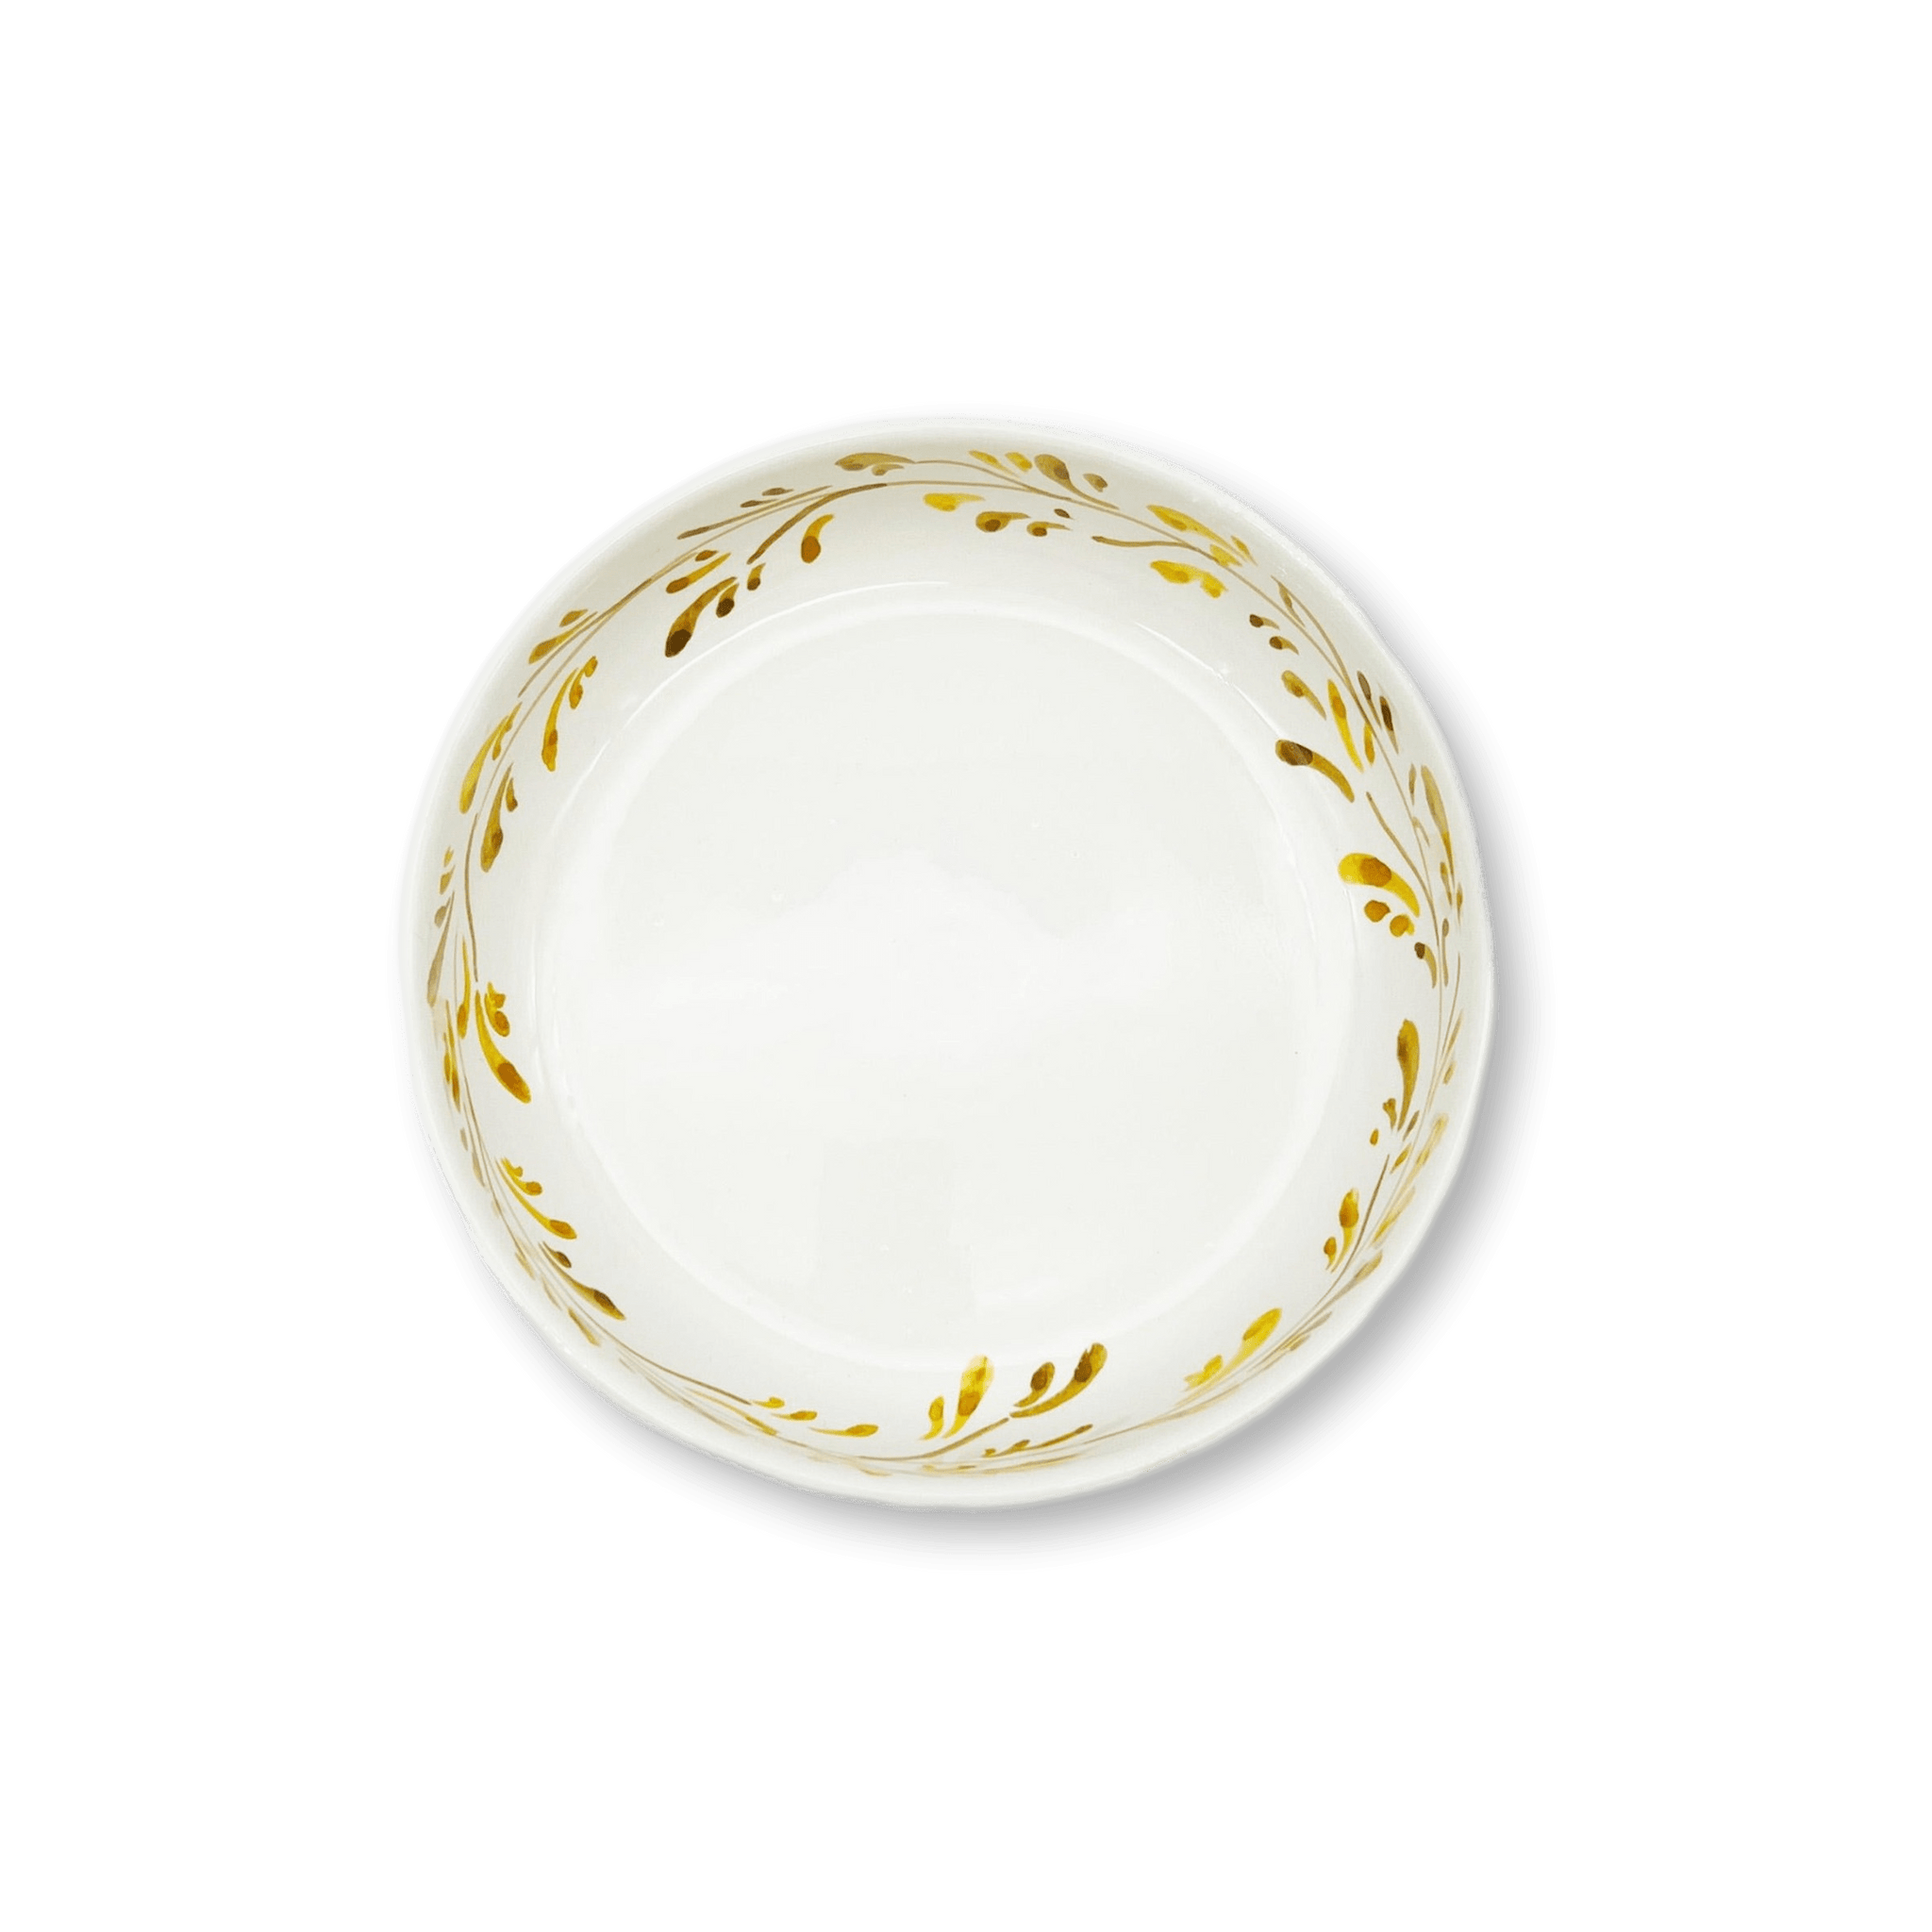 Mare Soup / Pasta Bowls - Saffron-Julia B. Casa